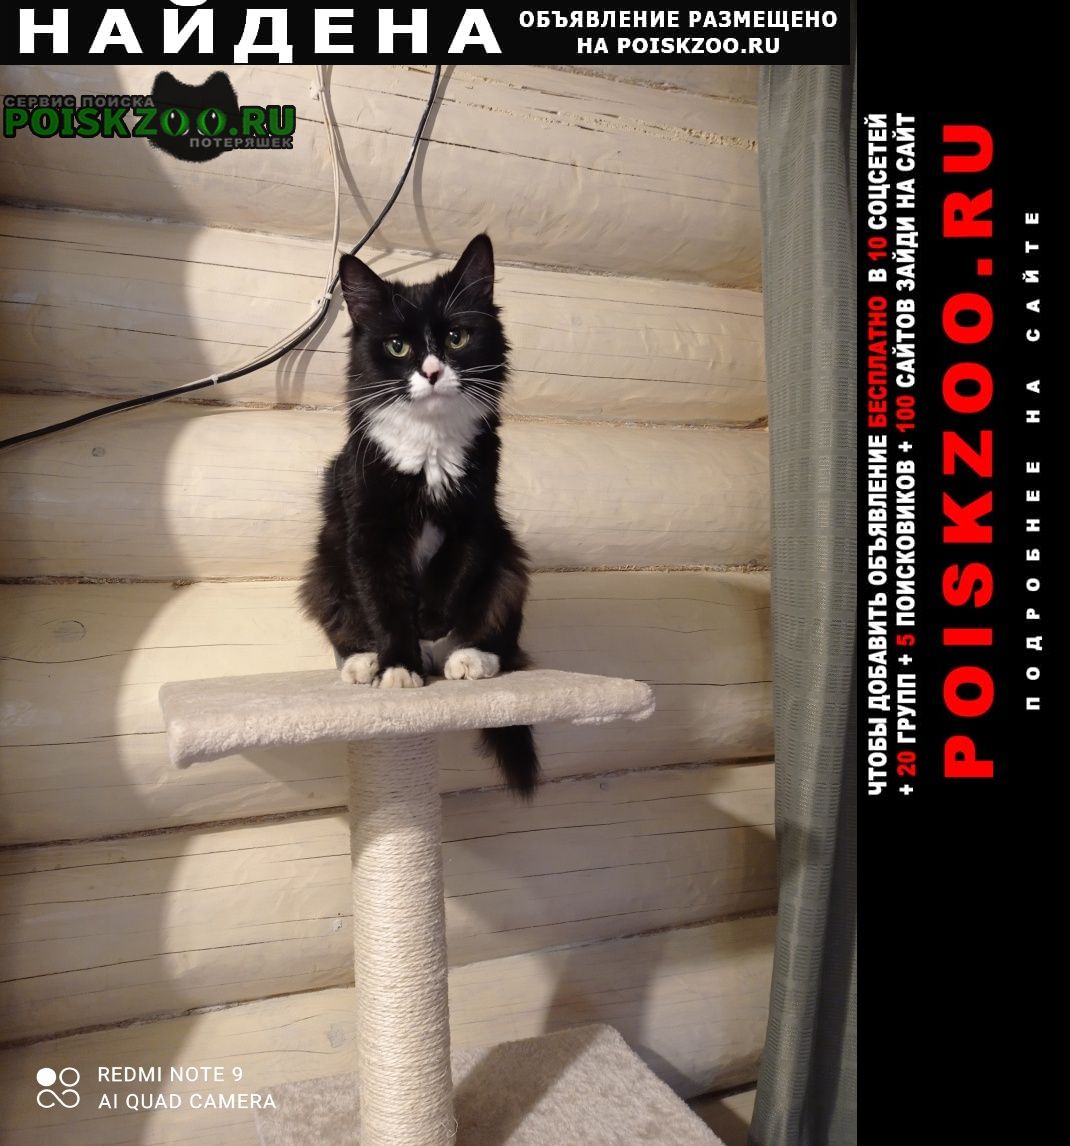 Найдена кошка 31 октября у магазина магнит Тверь